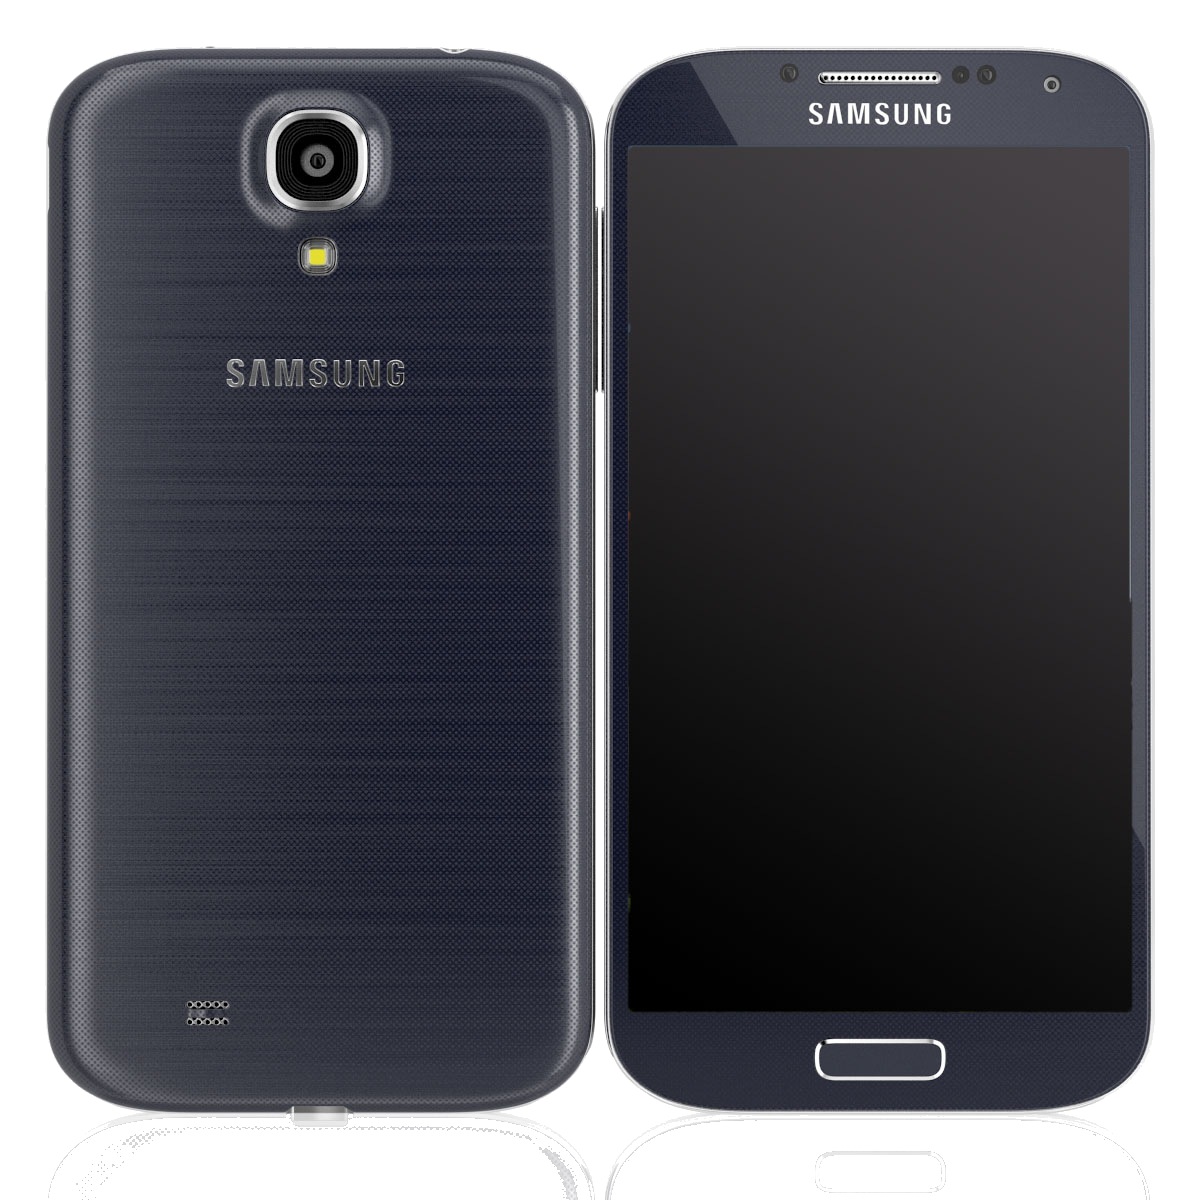 Samsung Galaxy S4 I9505 schwarz - Onhe Vertrag